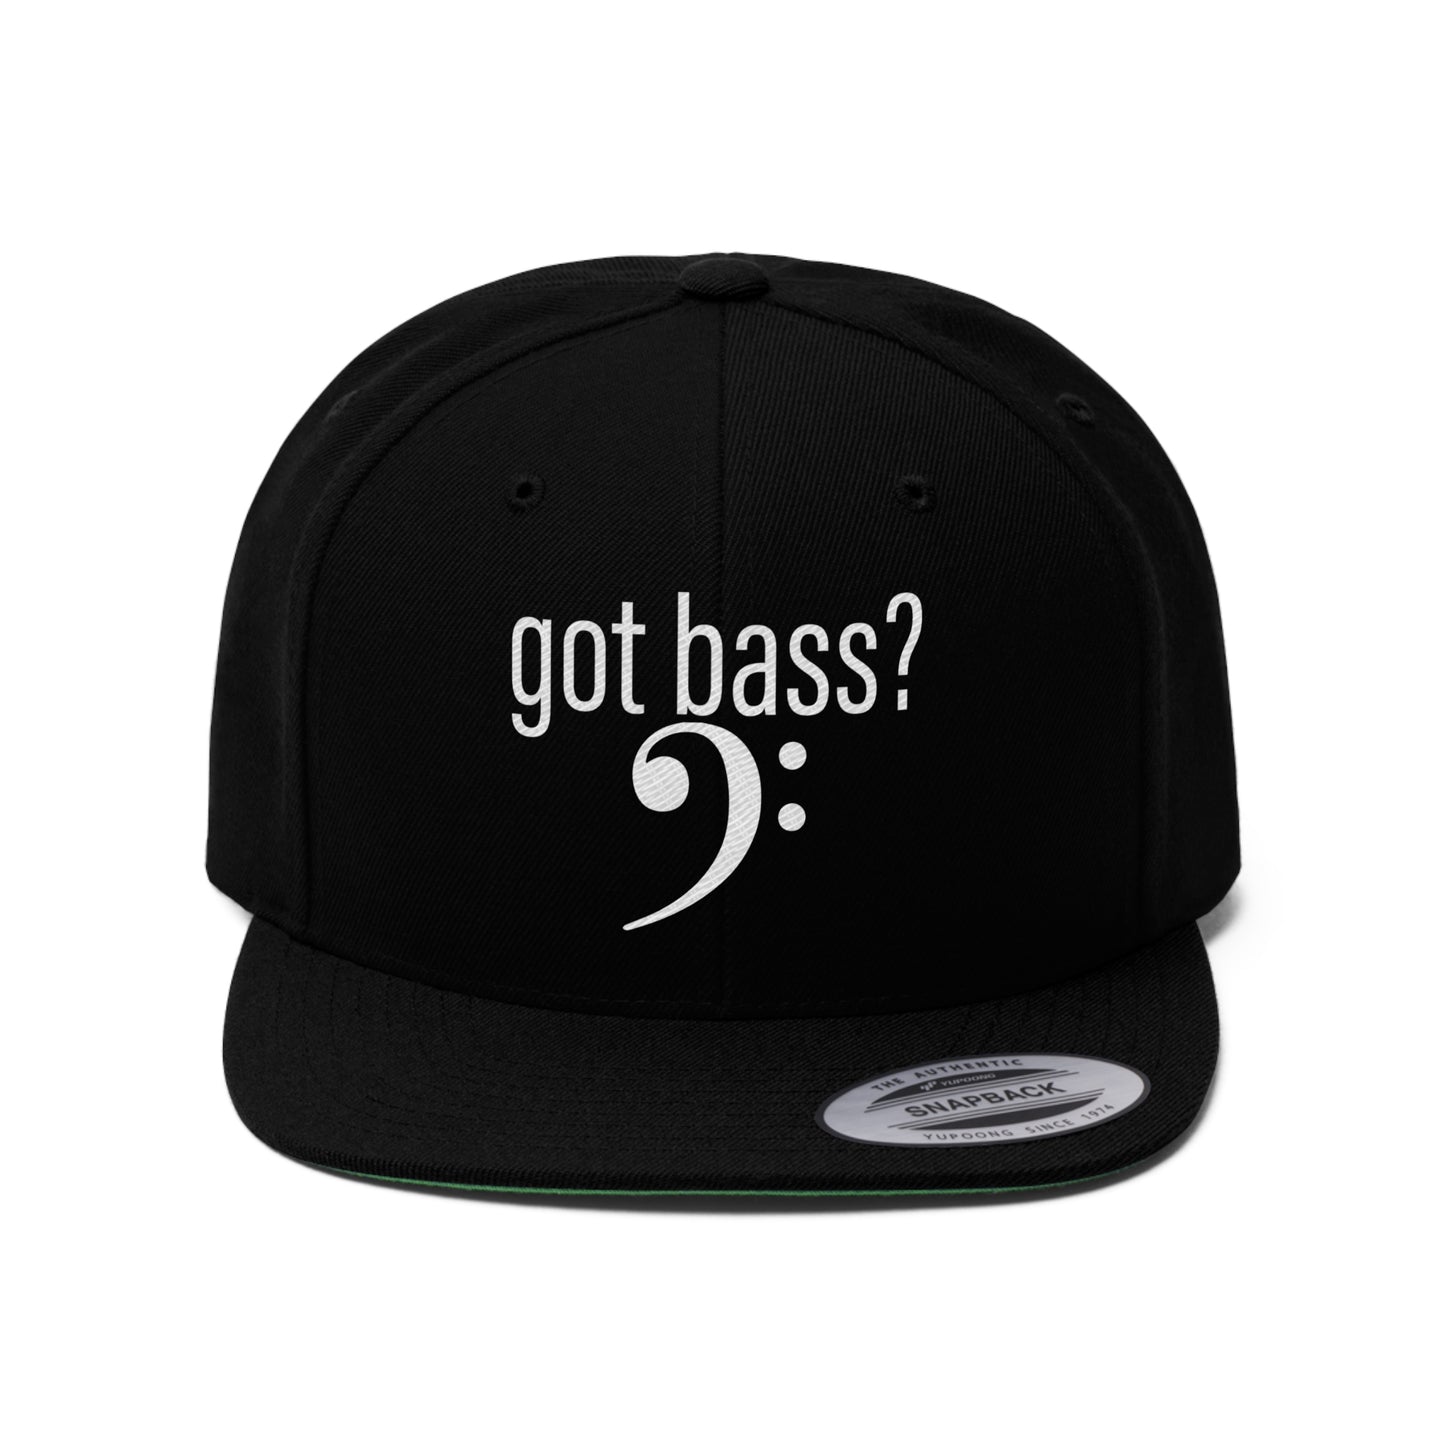 Embroidered "got bass?" Unisex Flat Bill Hat